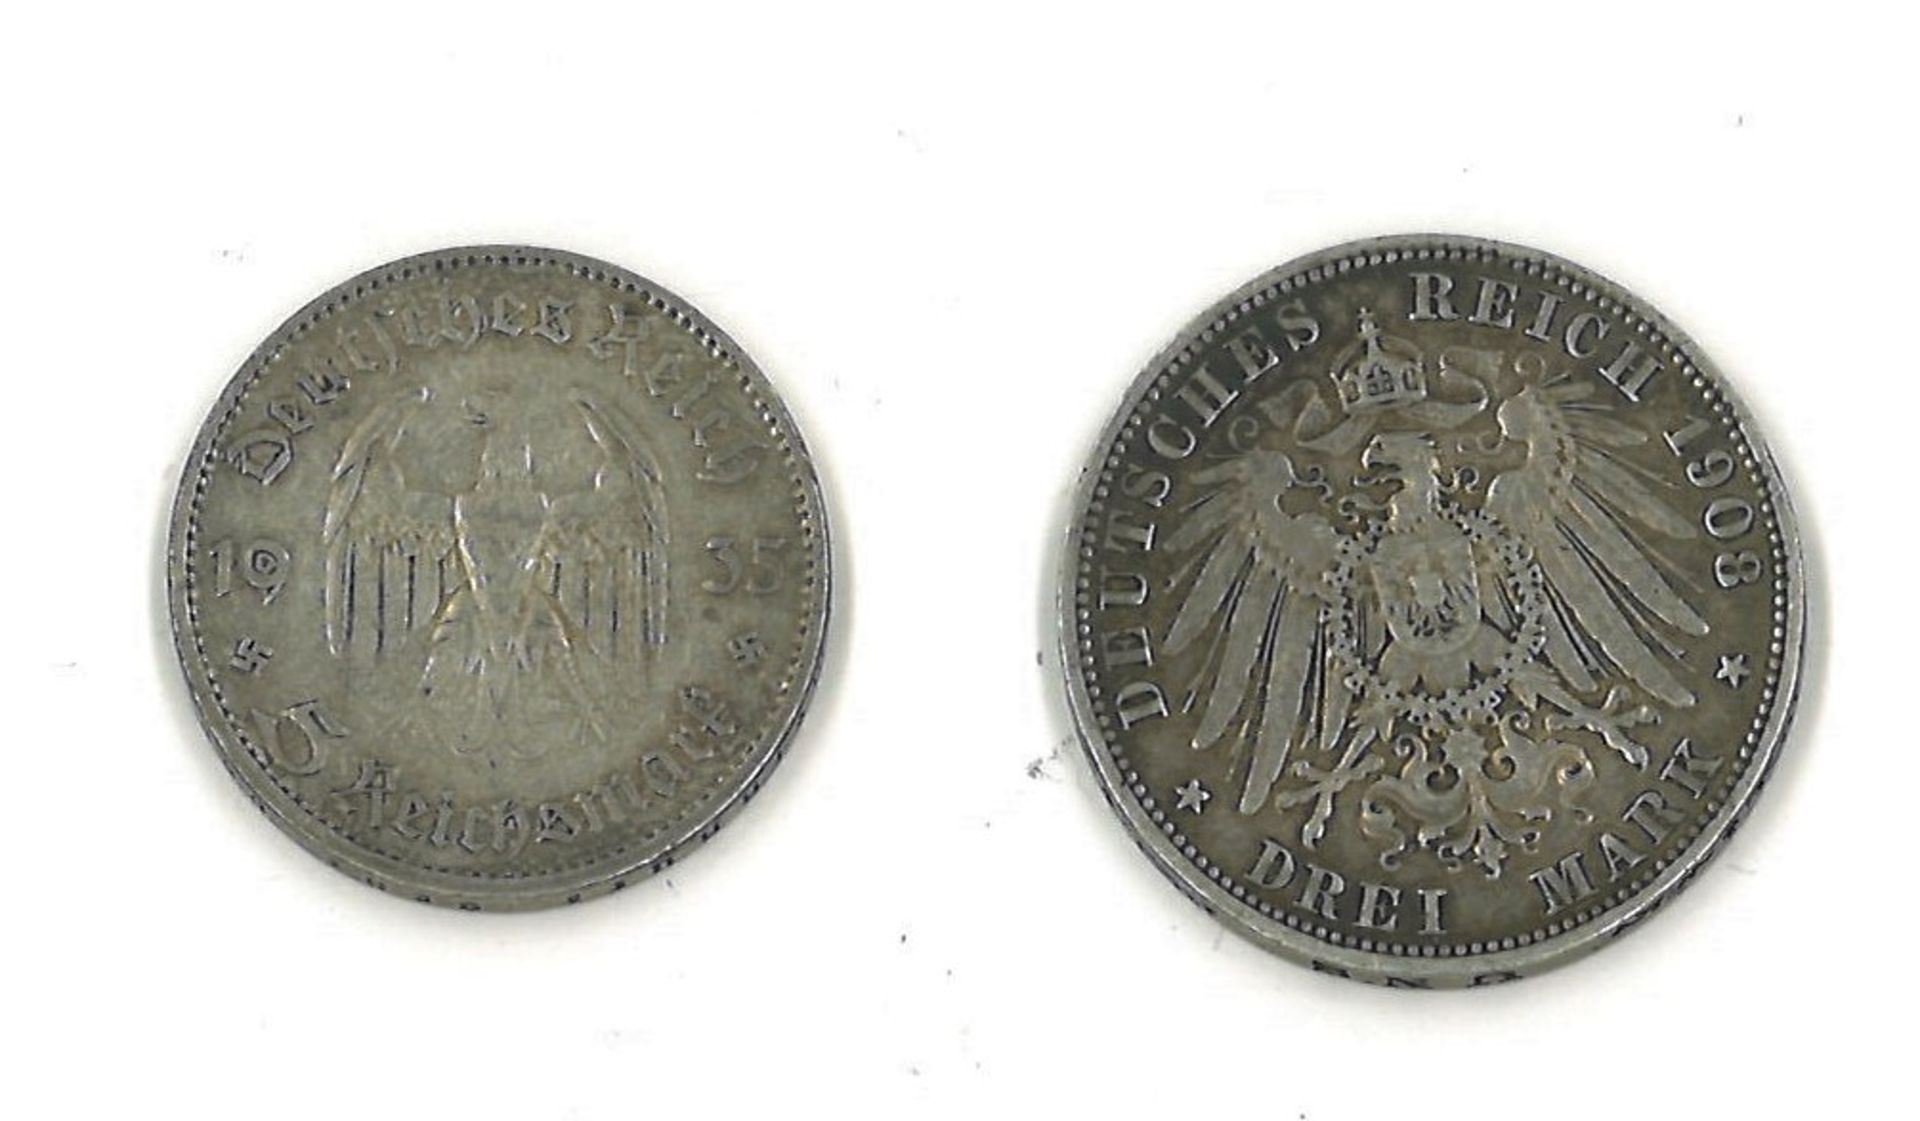 2 Münzen Deutschland 1x 3 Mark Preussen 1908, 1x 5 Reichsmark 1935 - Image 2 of 2